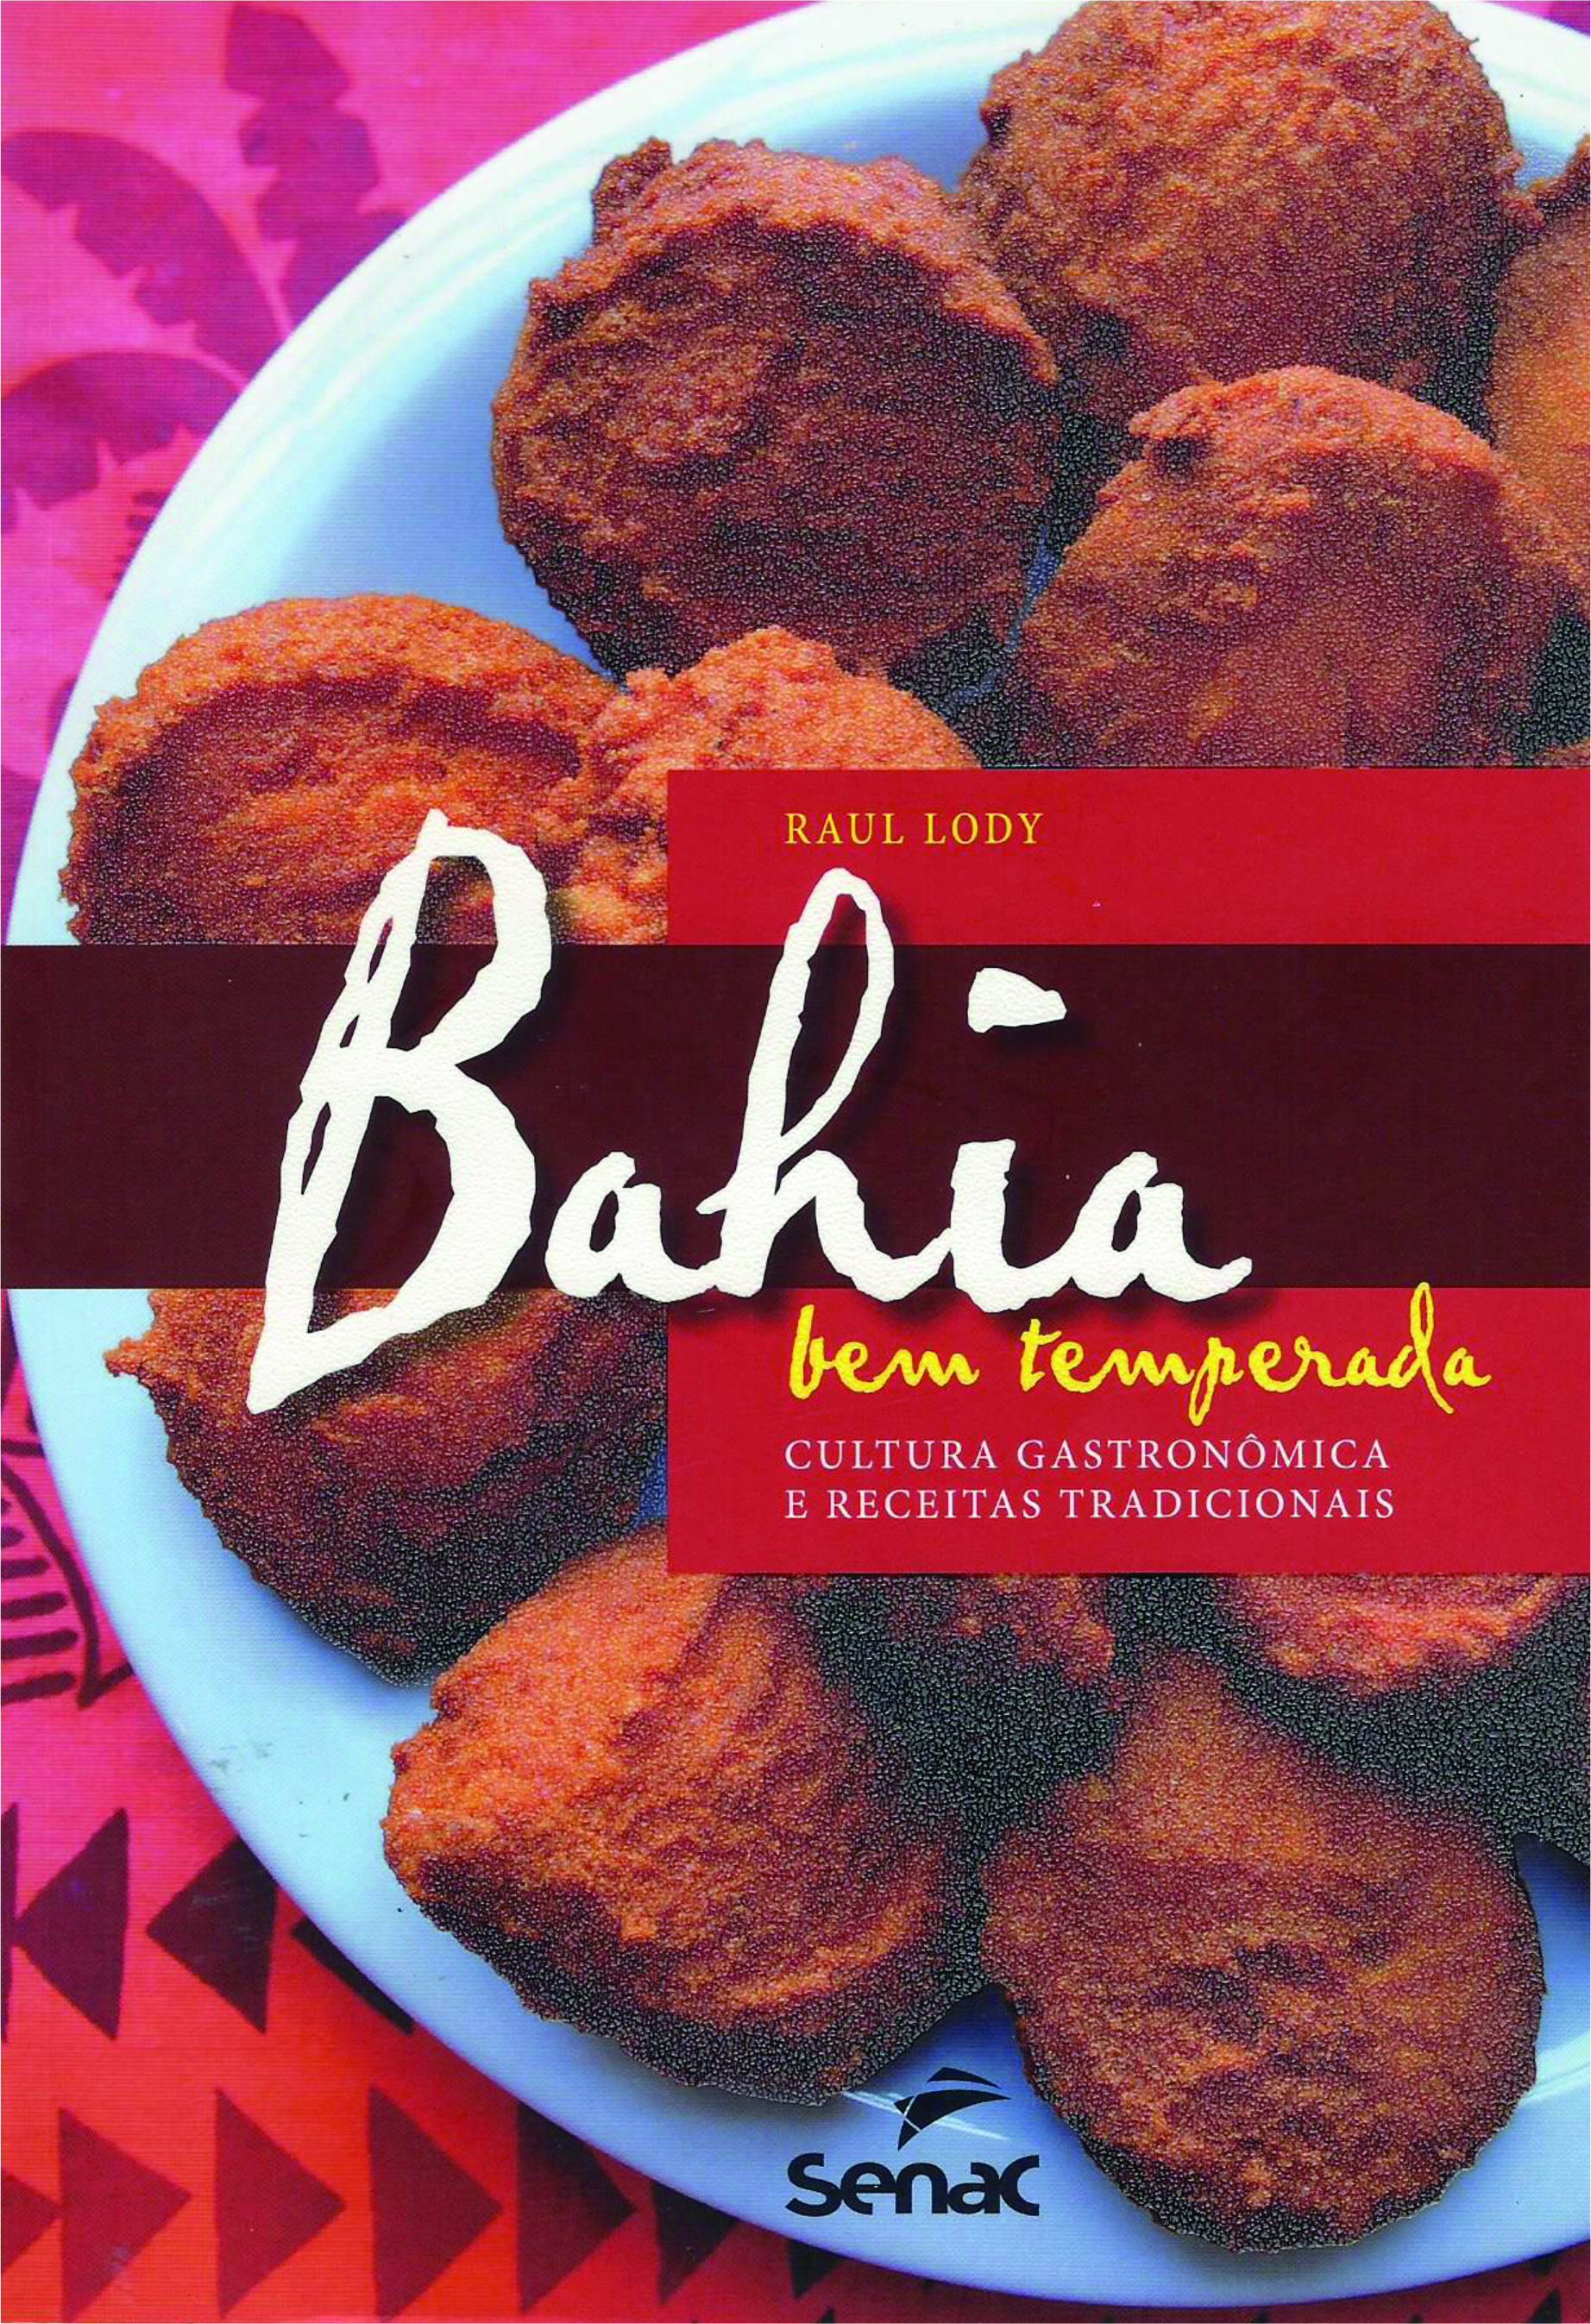 Bahia bem temperada - Cultura gastronômica e receitas tradicionais